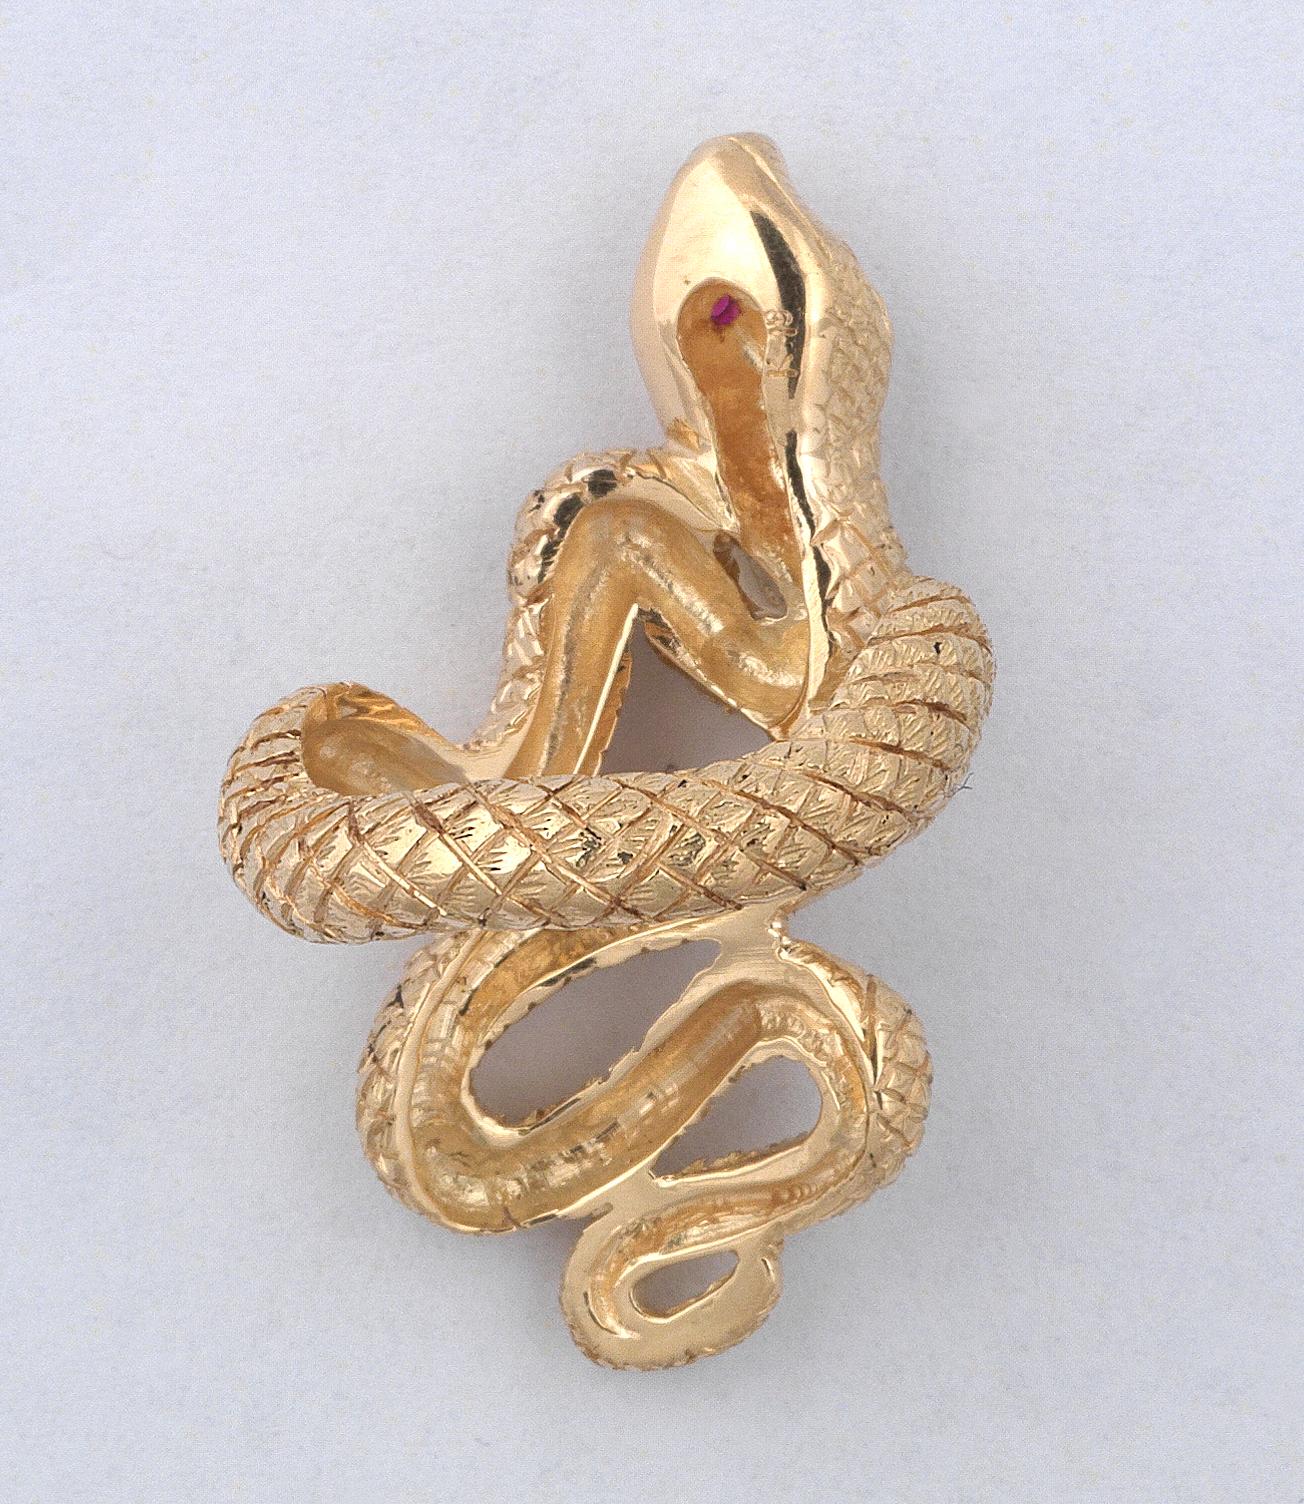 Retro Rubies and 18 Karat Gold Snake Ring